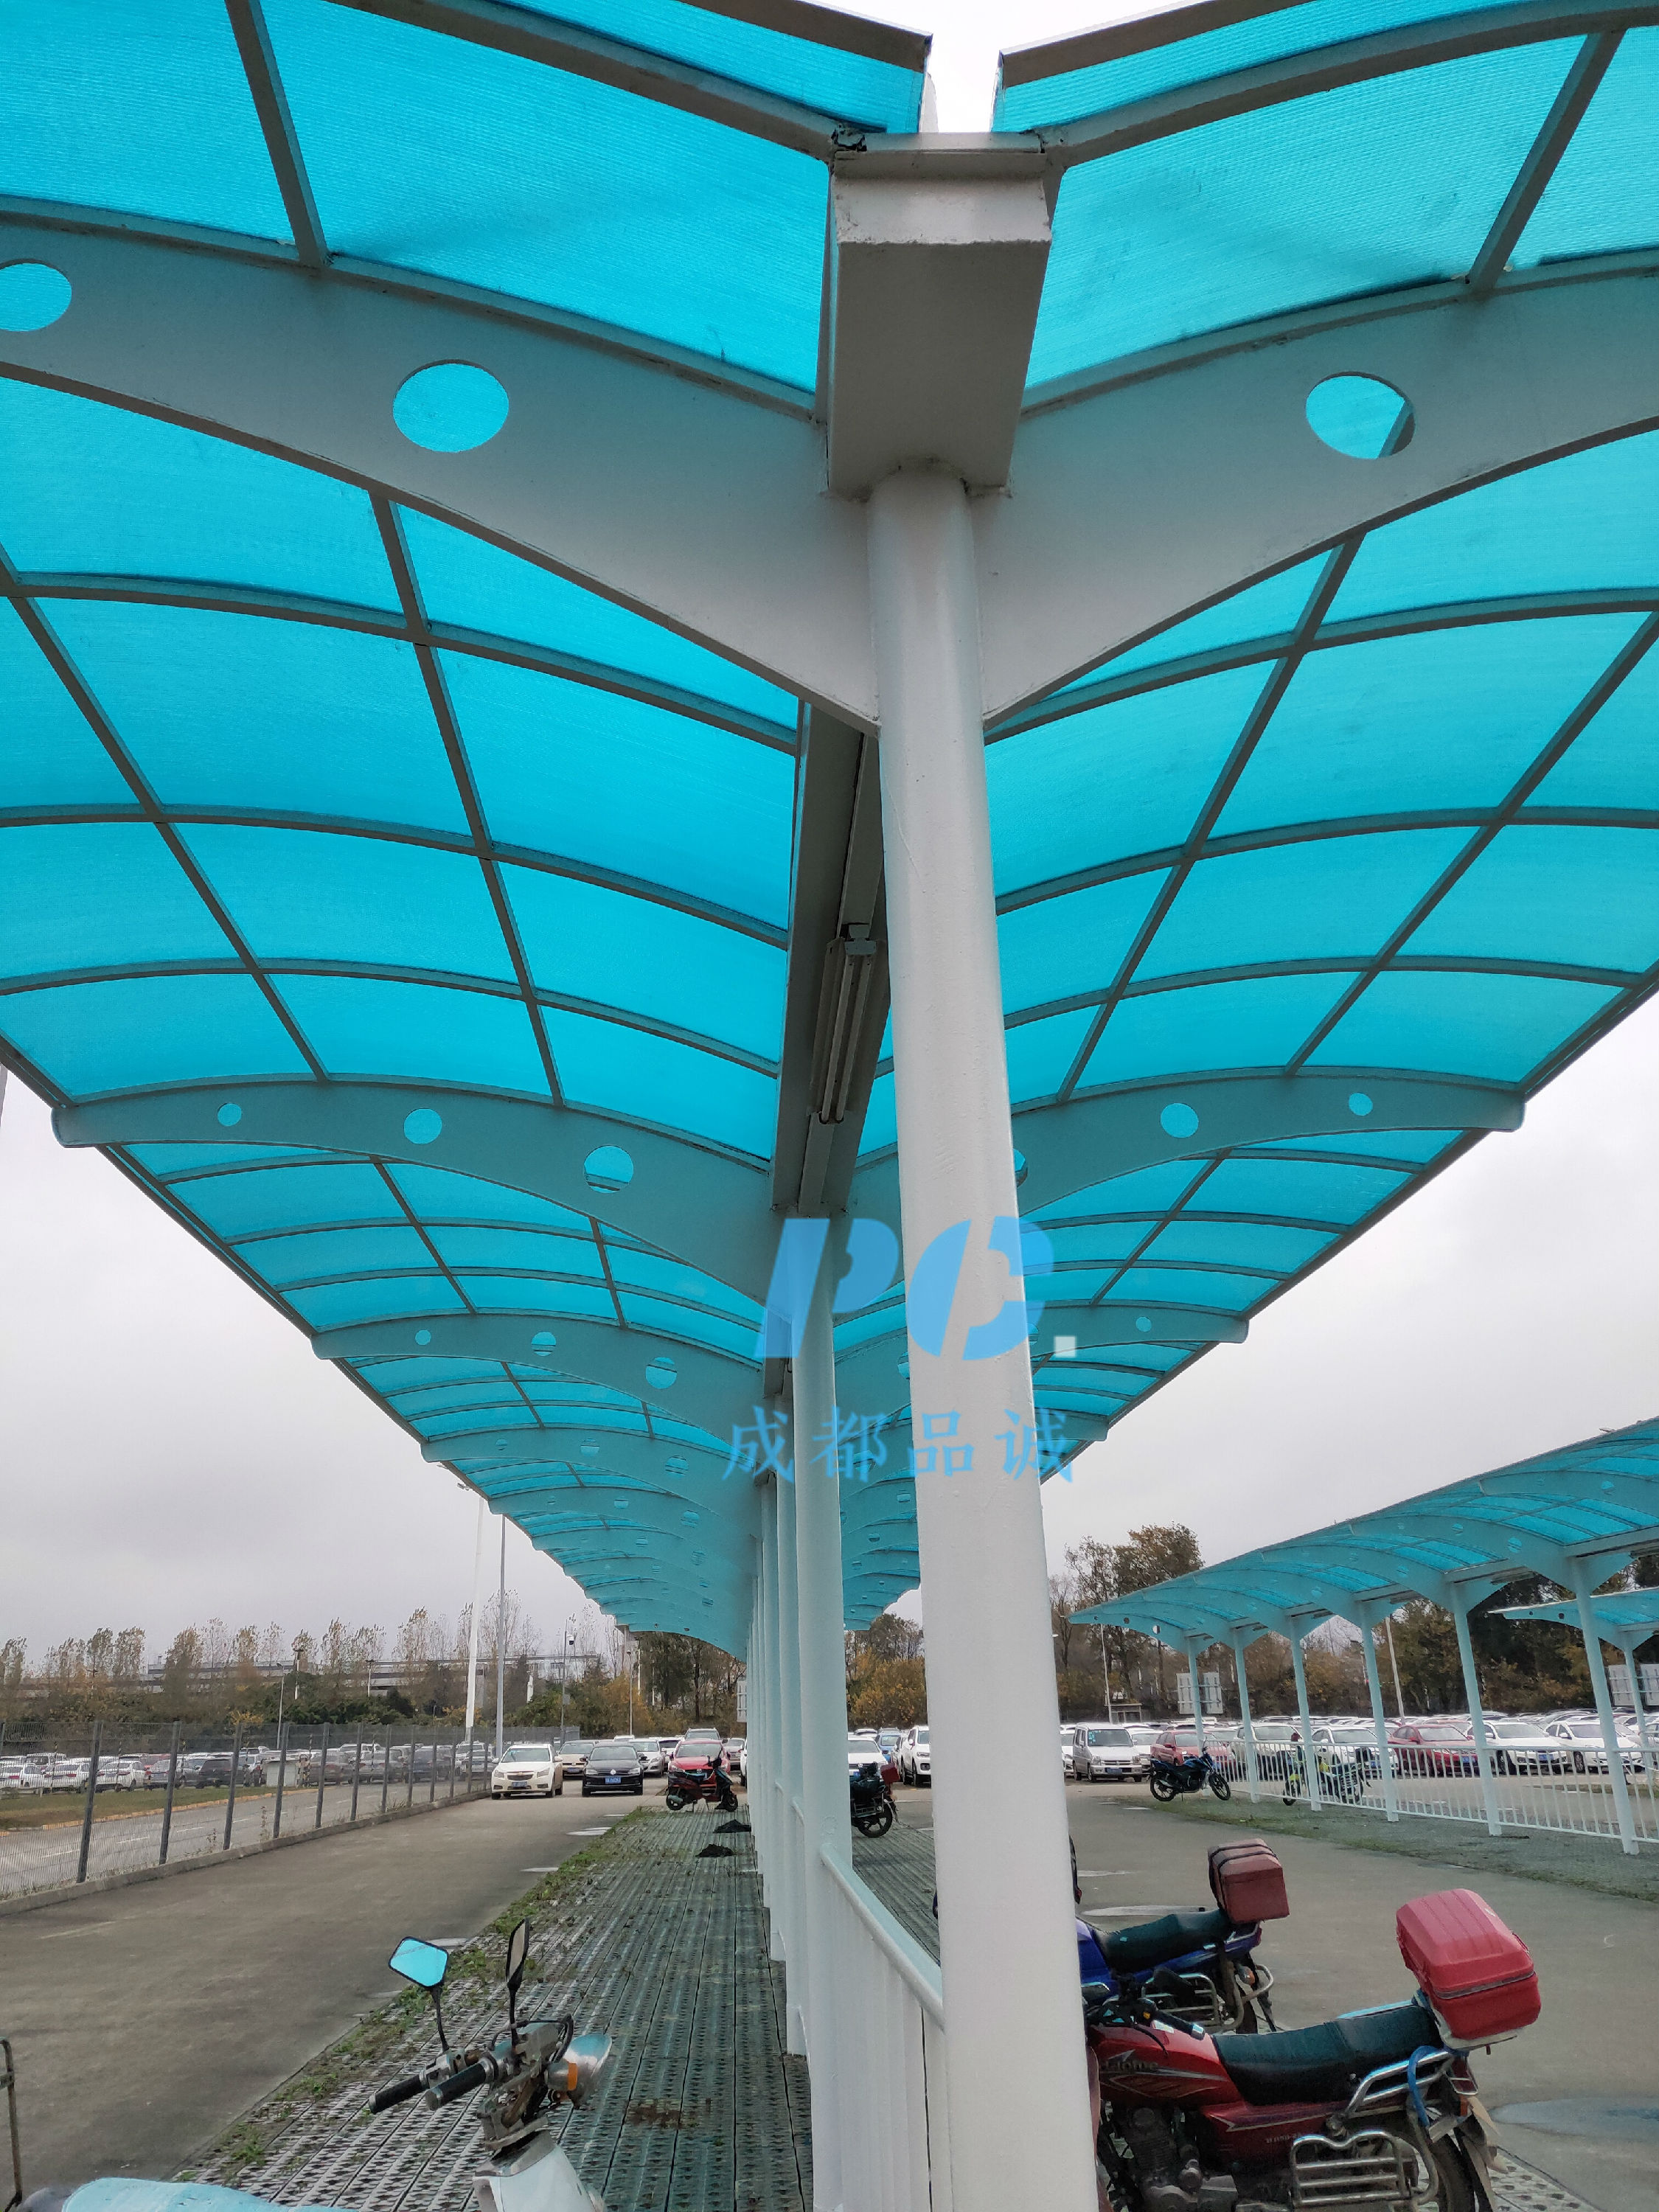 钢结构pc阳光棚 制作安装四川采光雨棚 停车棚 过道雨棚-阿里巴巴